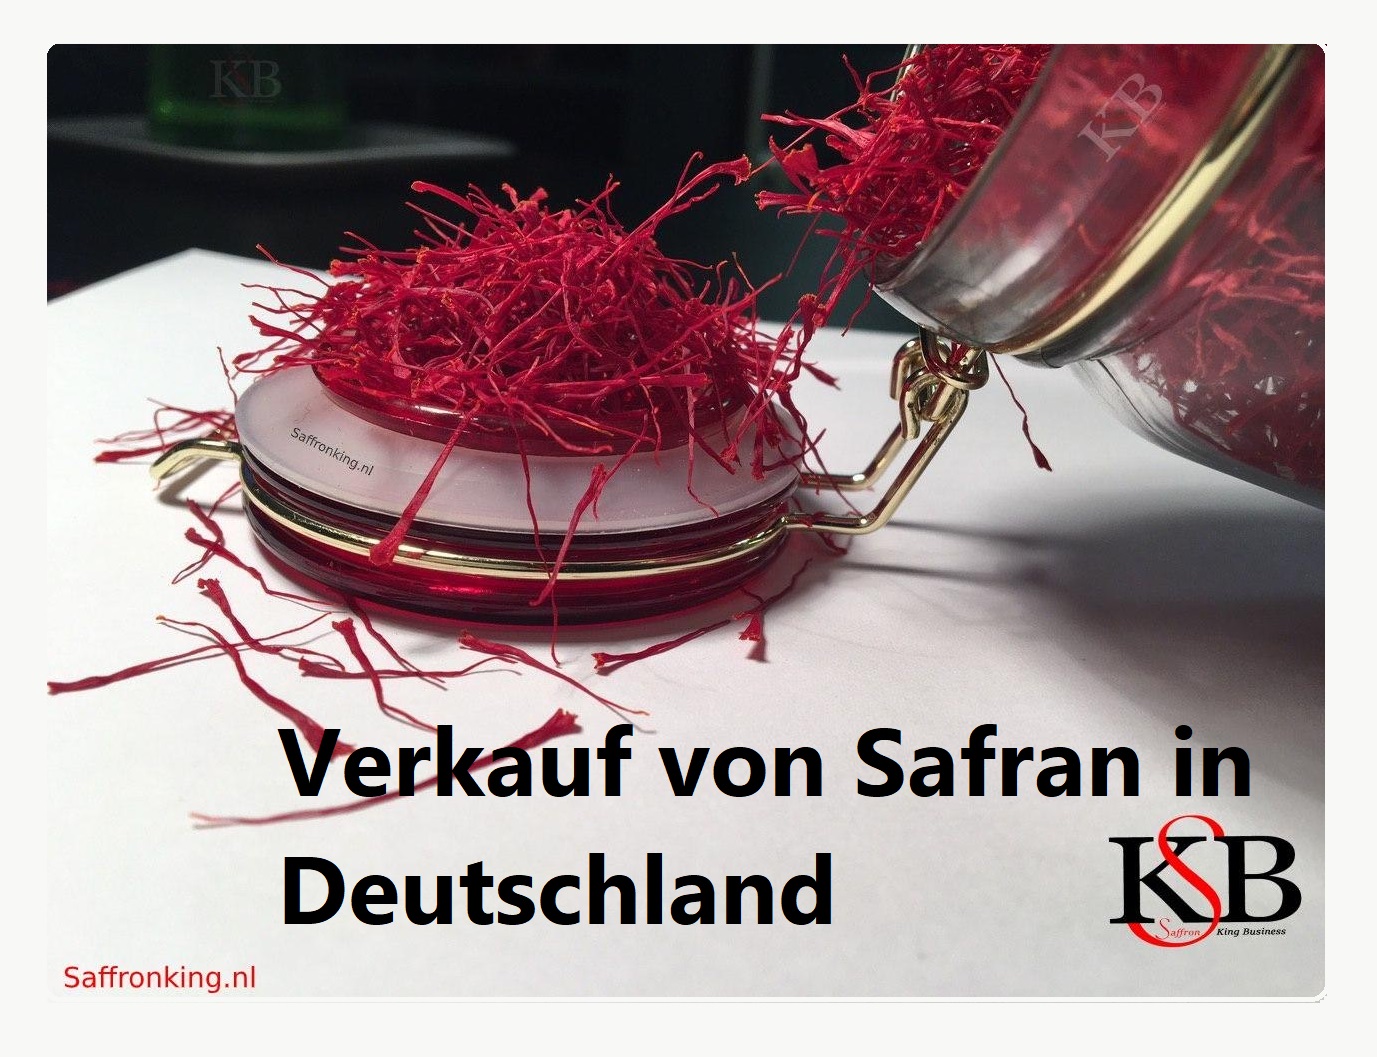 Verkauf von Safran in Deutschland